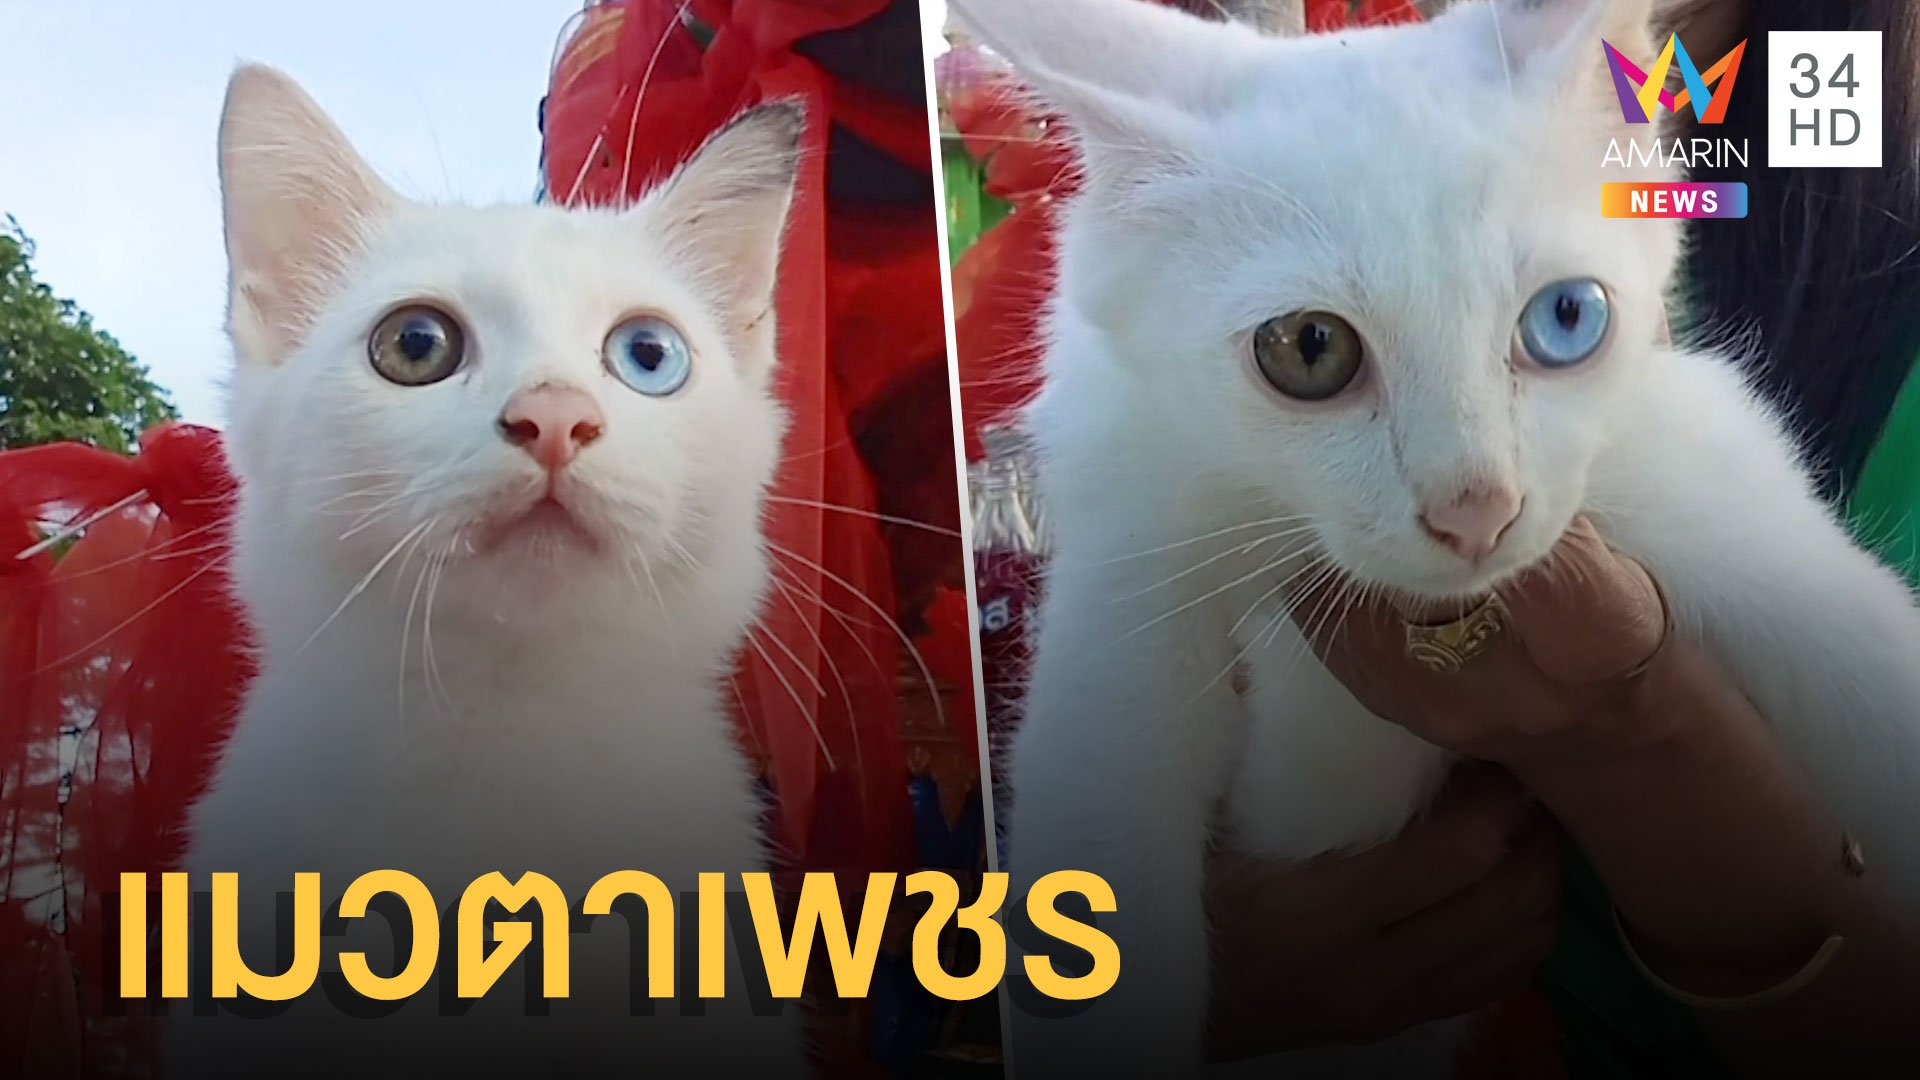 ไว้ท้าวเวสสุวรรณเจอแมวขาวตาเพชรโดนทิ้งไว้ที่วัด | ข่าวอรุณอมรินทร์ | 30 มิ.ย. 65 | AMARIN TVHD34